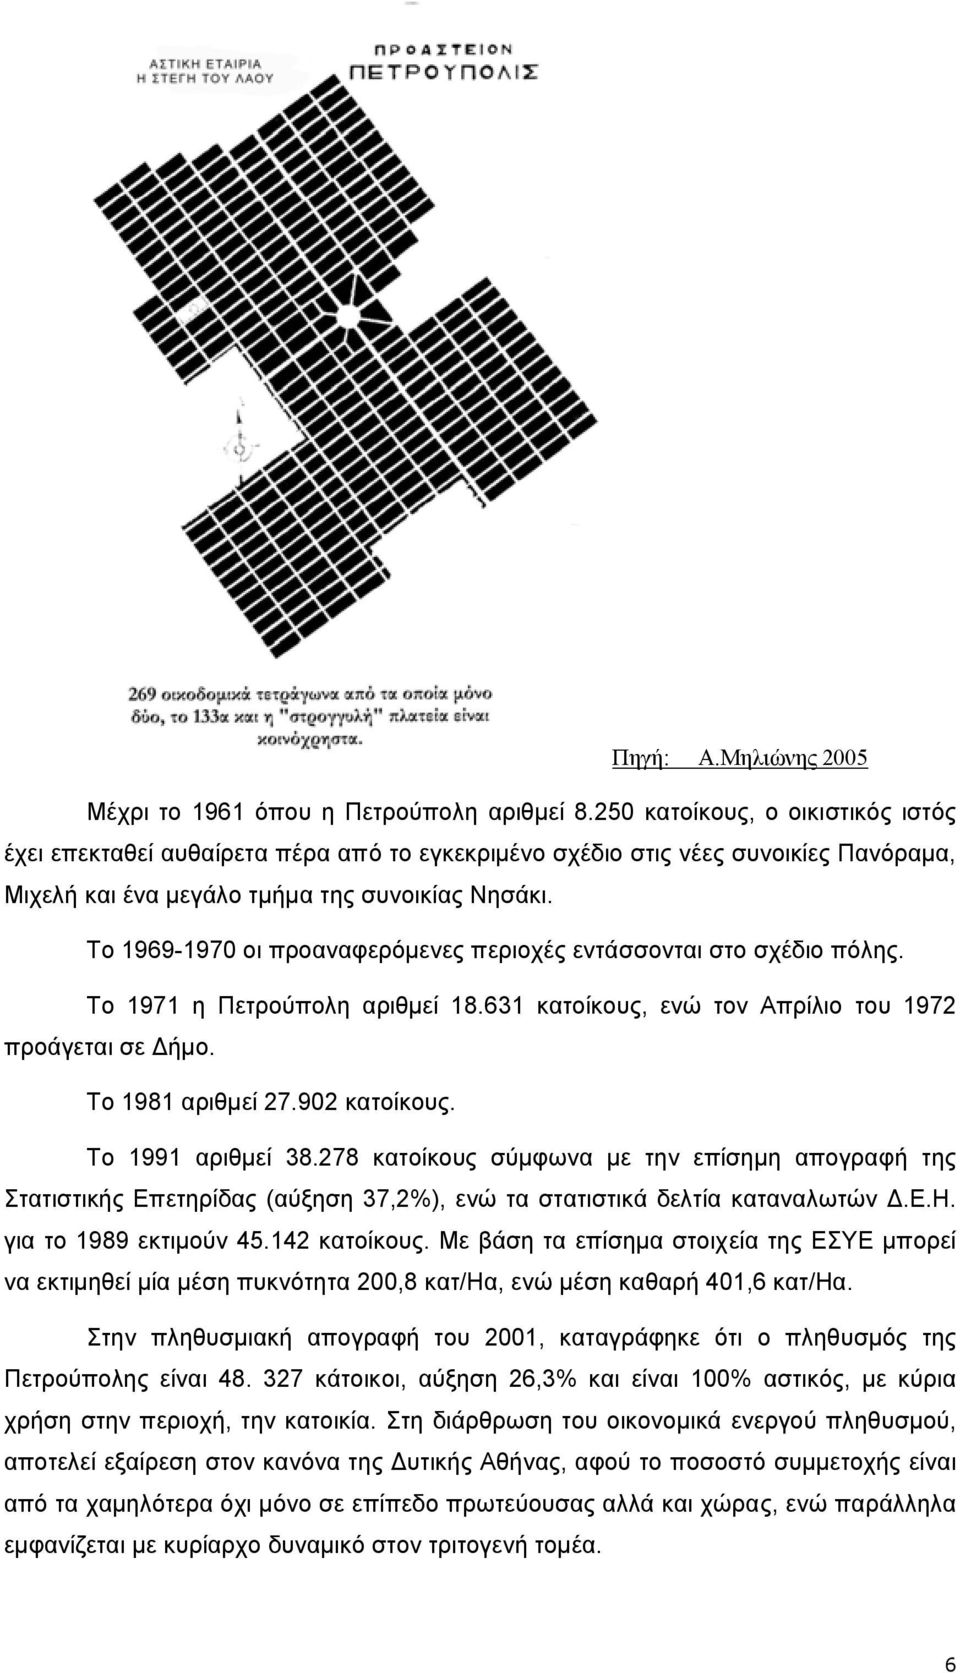 Το 1969-1970 οι προαναφερόµενες περιοχές εντάσσονται στο σχέδιο πόλης. Το 1971 η Πετρούπολη αριθµεί 18.631 κατοίκους, ενώ τον Απρίλιο του 1972 προάγεται σε ήµο. Το 1981 αριθµεί 27.902 κατοίκους.